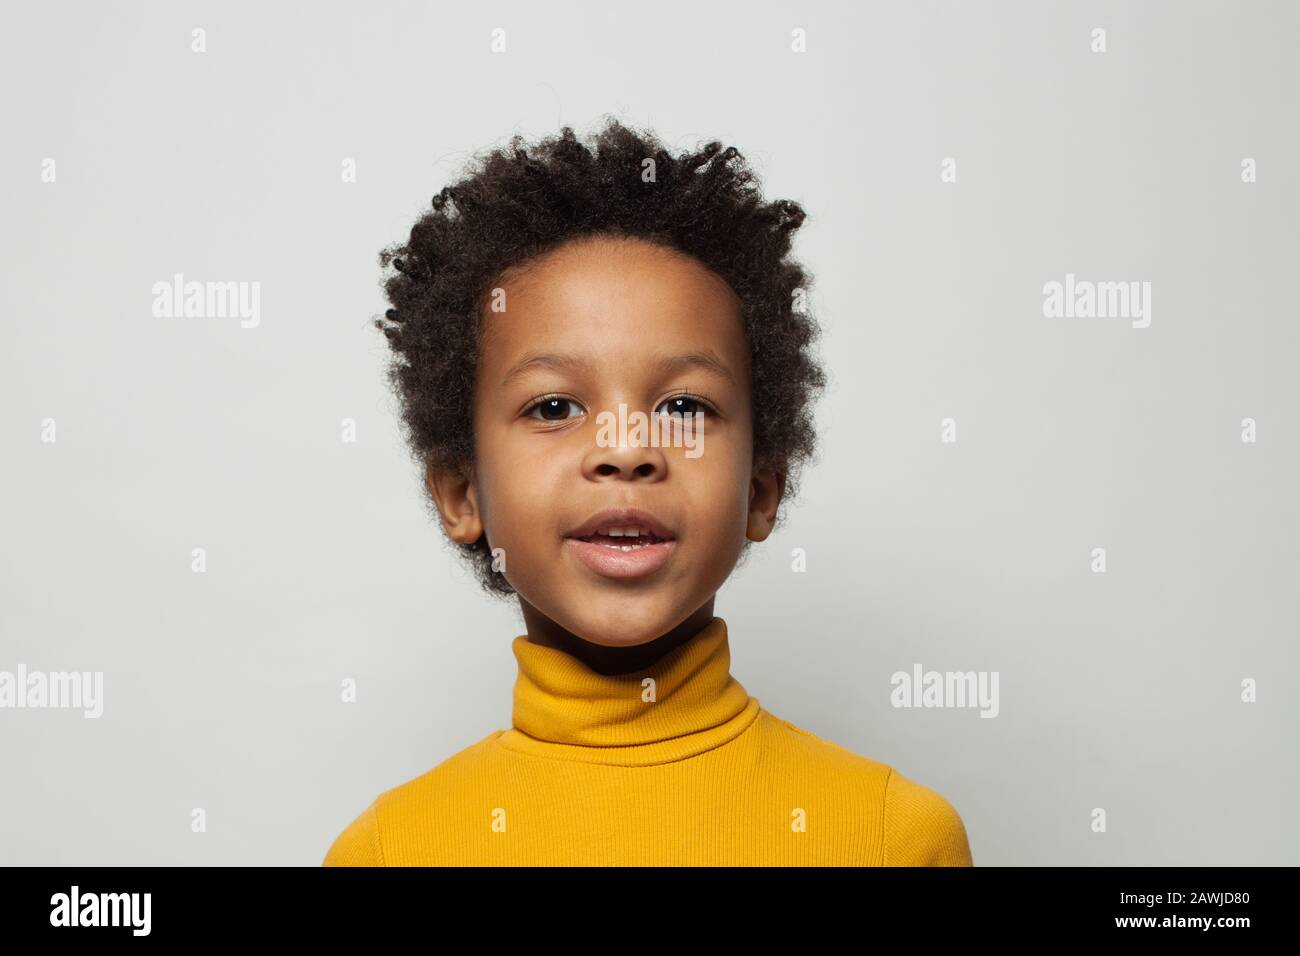 Fröhlicher schwarzer Kinderjunge im gelben Turnleneck-Pullover lächelnd auf weißem Hintergrund Stockfoto